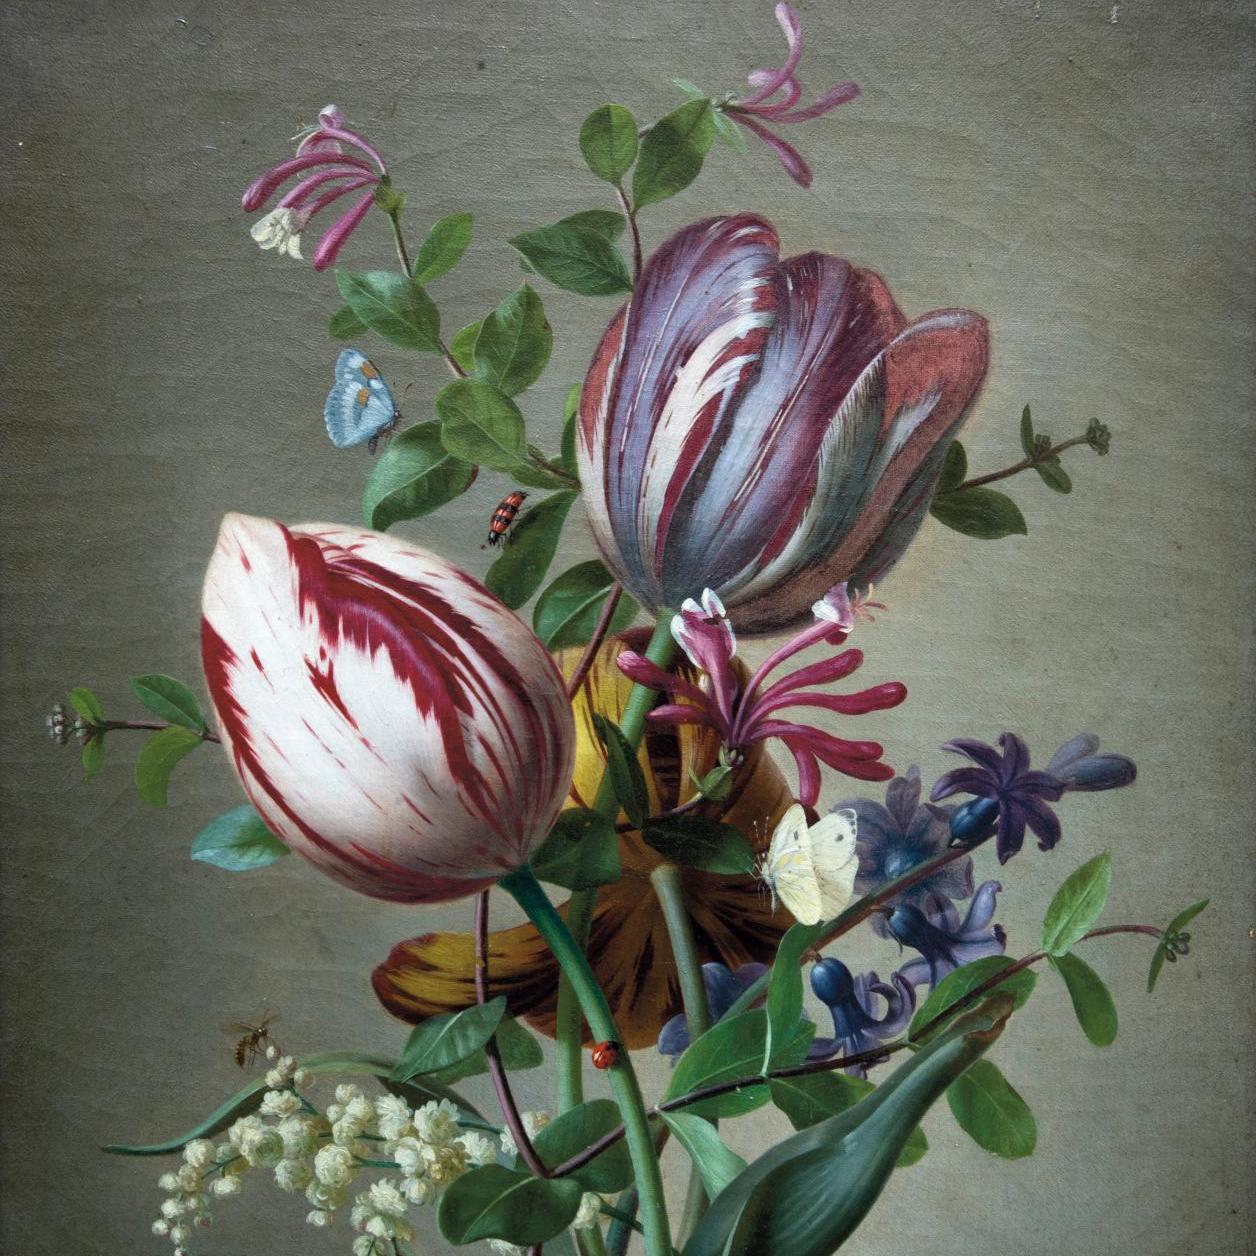 A Record for Rémillieux's Bouquet - Lots sold